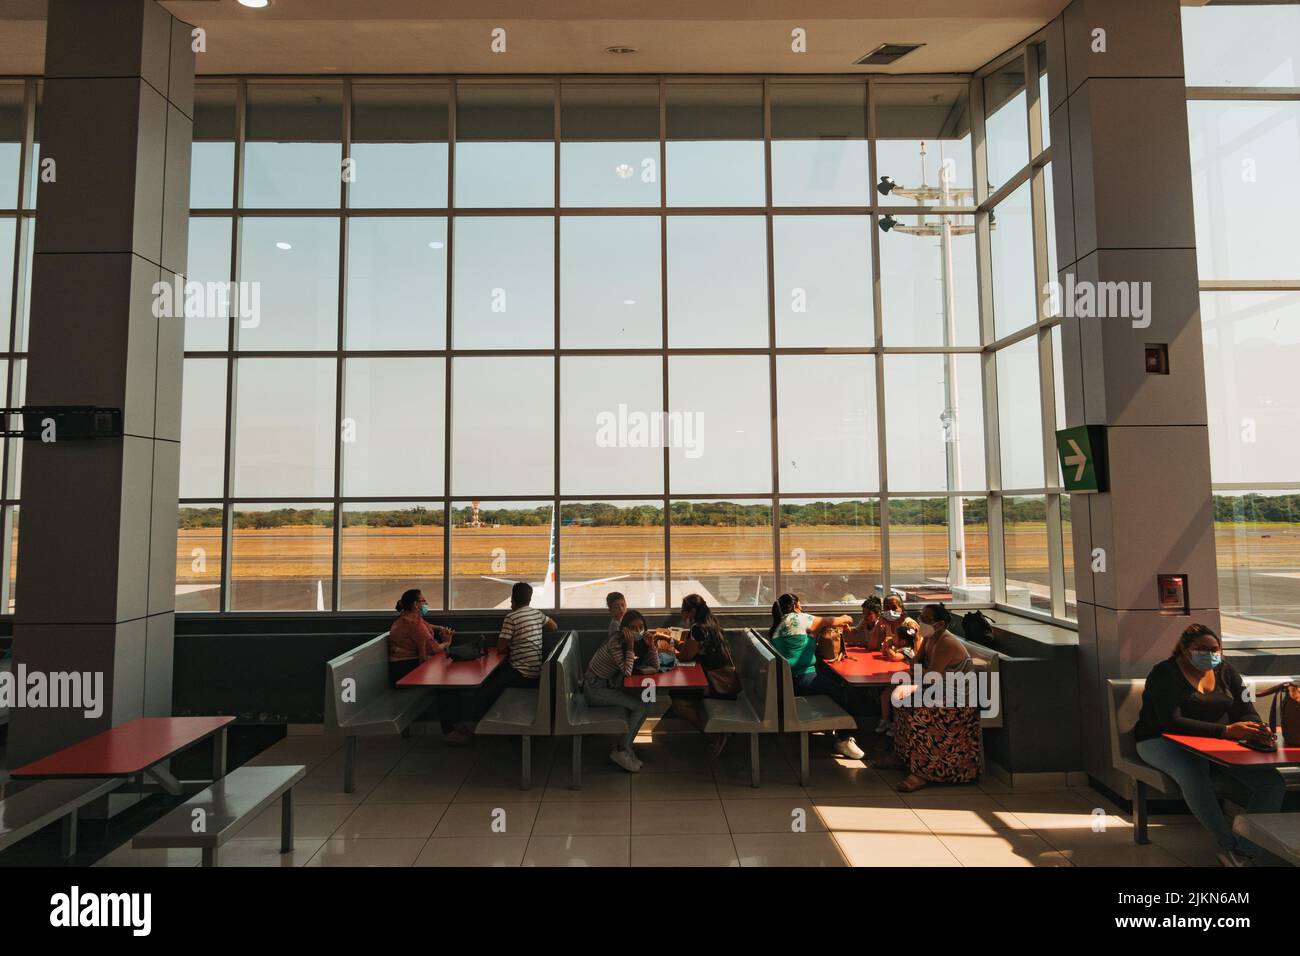 Die Nahrungsmittelhalle und der Beobachtungsbereich im Terminal des internationalen Flughafens El Salvador, El Salvador Stockfoto